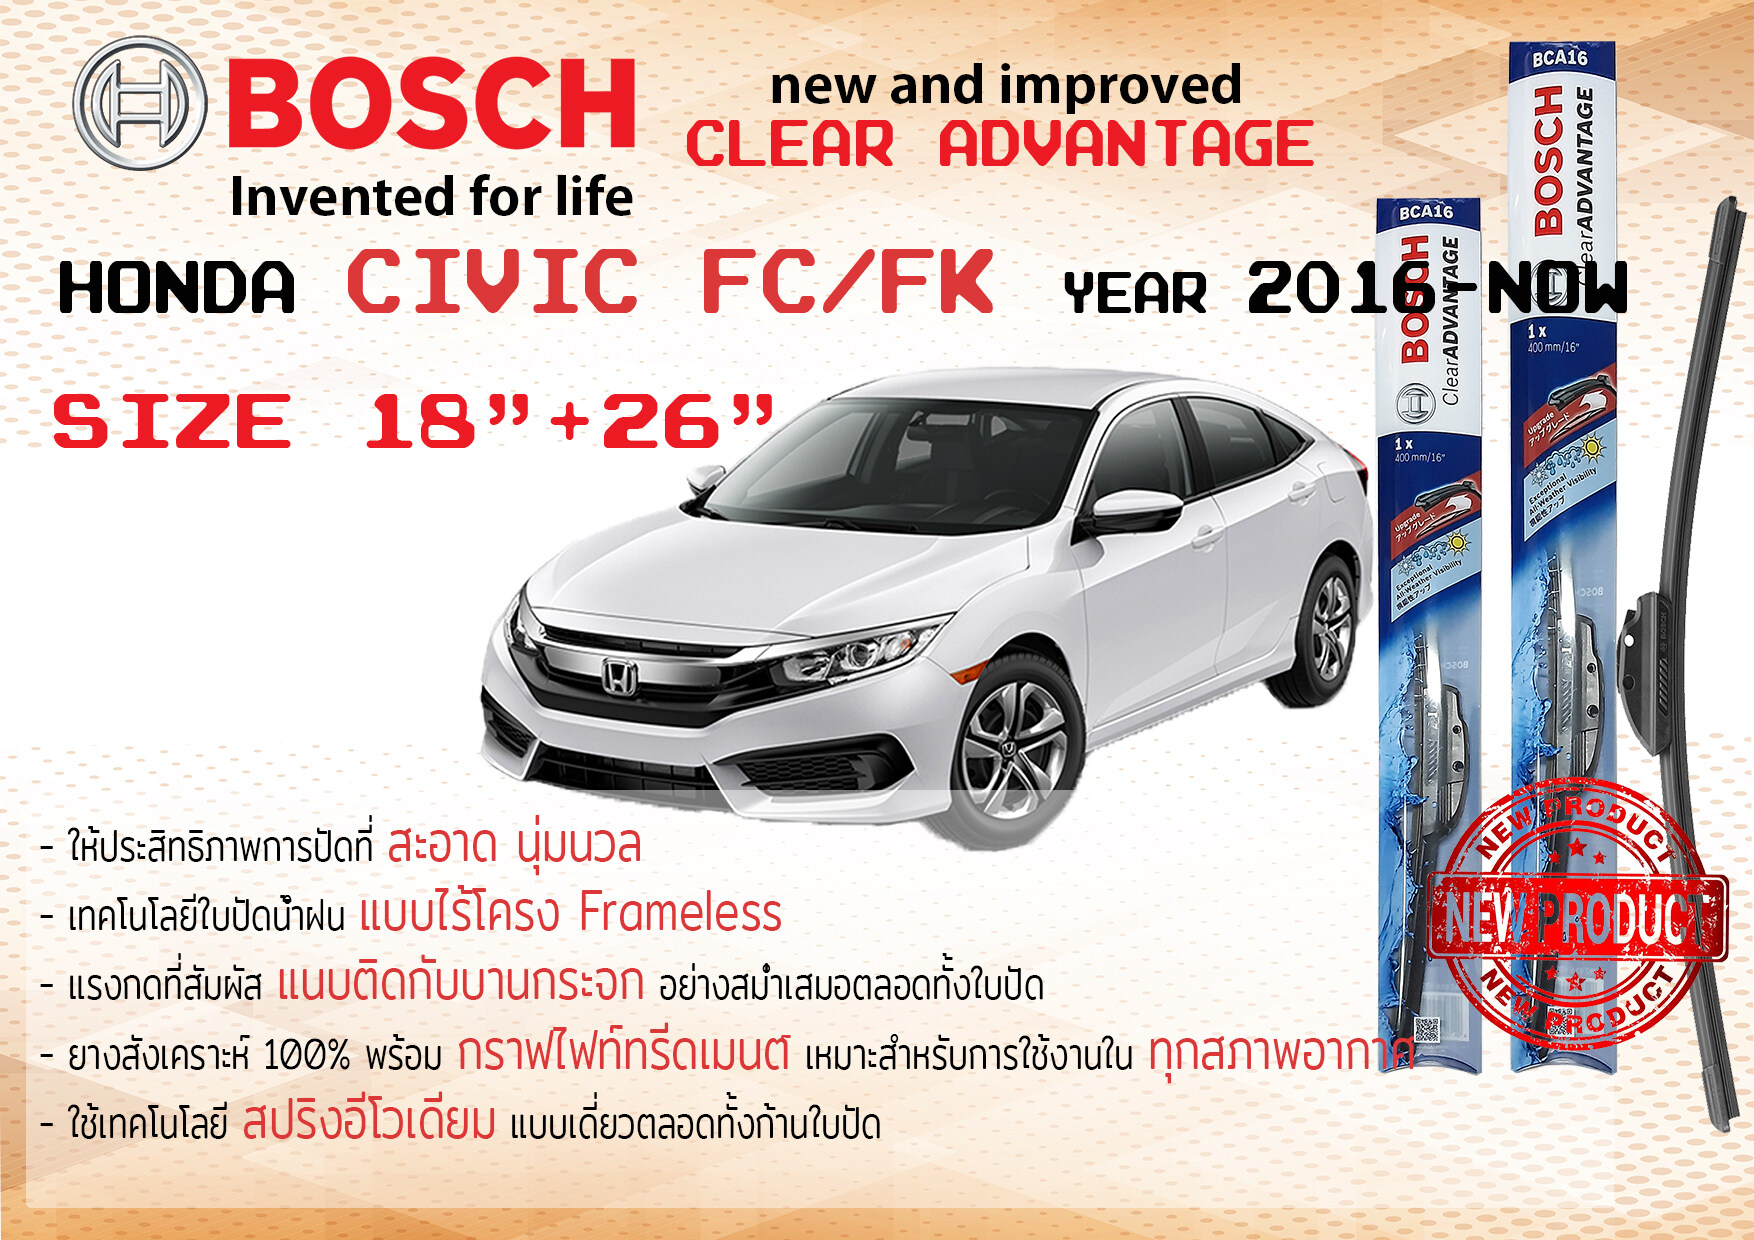 ใบปัดน้ำฝน คู่หน้า Bosch Clear Advantage frameless ก้านอ่อน ขนาด 18”+26” สำหรับรถ Honda Civic FC/FK ปี 2016-2020 ปี 16,17,18,19,20 ฮอนด้า ซีวิค ทนแสงUV เงียบ รุ่นใหม่